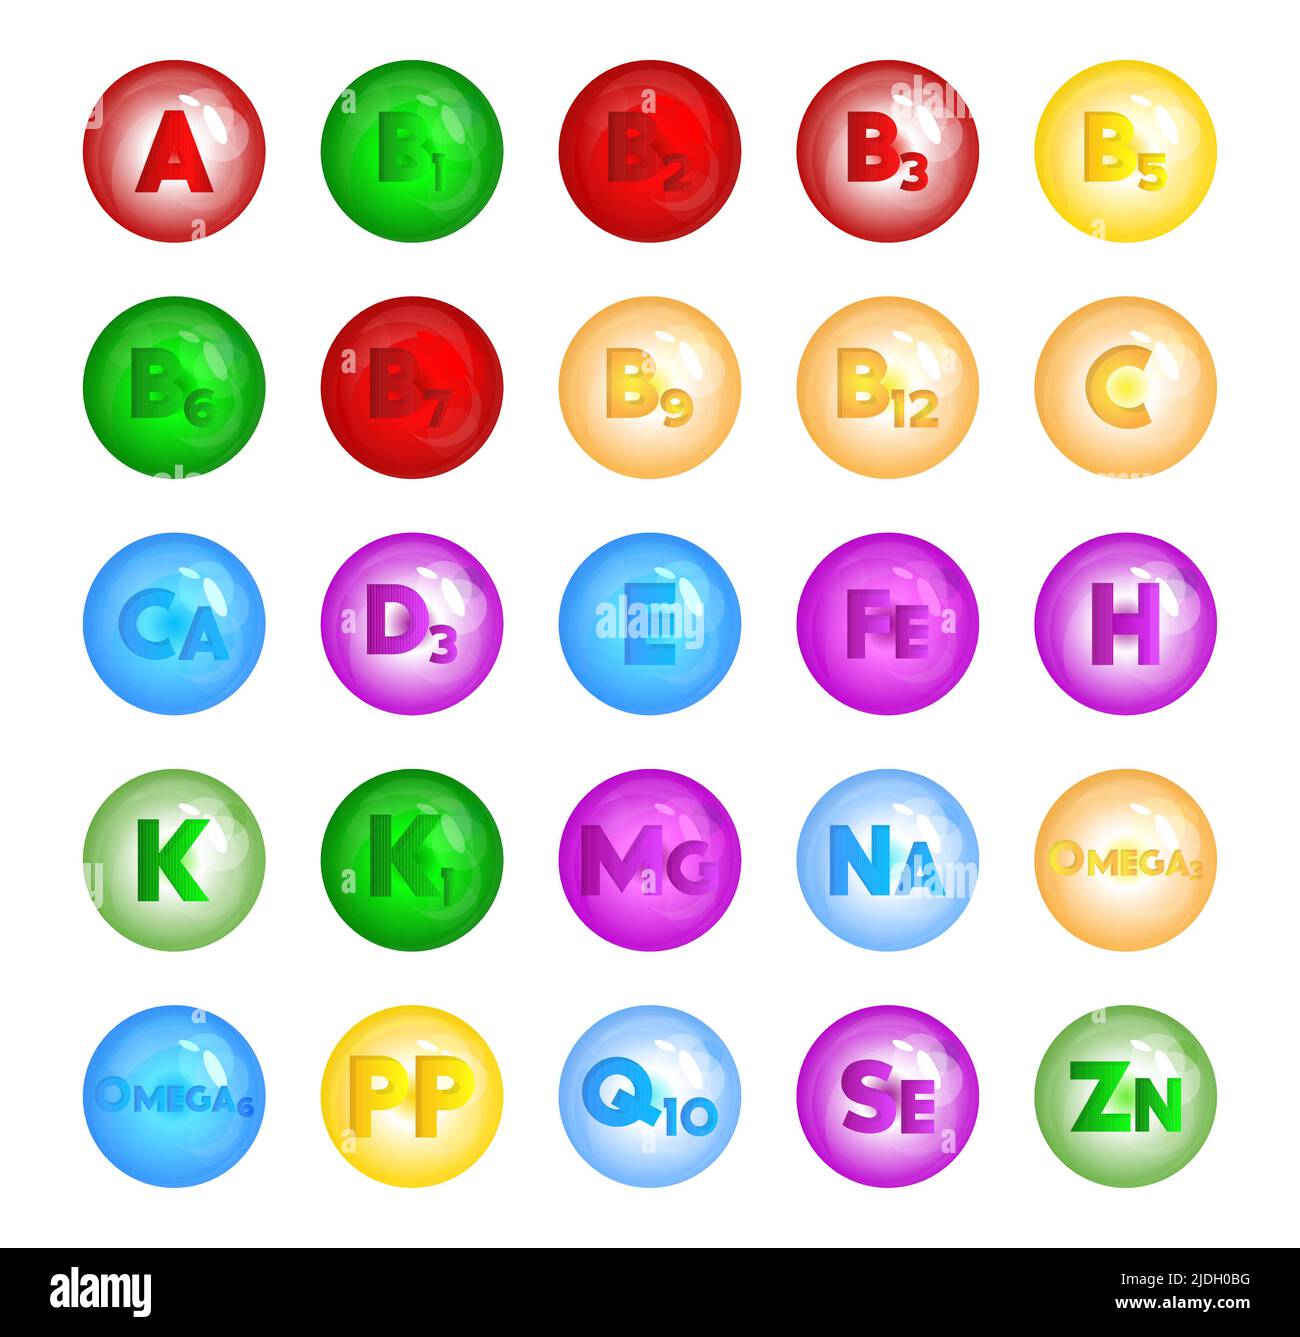 Multivitamin, Vitamin und Mineralien Vector Icon Kollektion. VITAMIN A, B1, B2, B3, B5, B6, B7, B9, B12, C, Ca, D3, E, Fe, H, K, K1, mg, Na, Omega3, Ome Stock Vektor